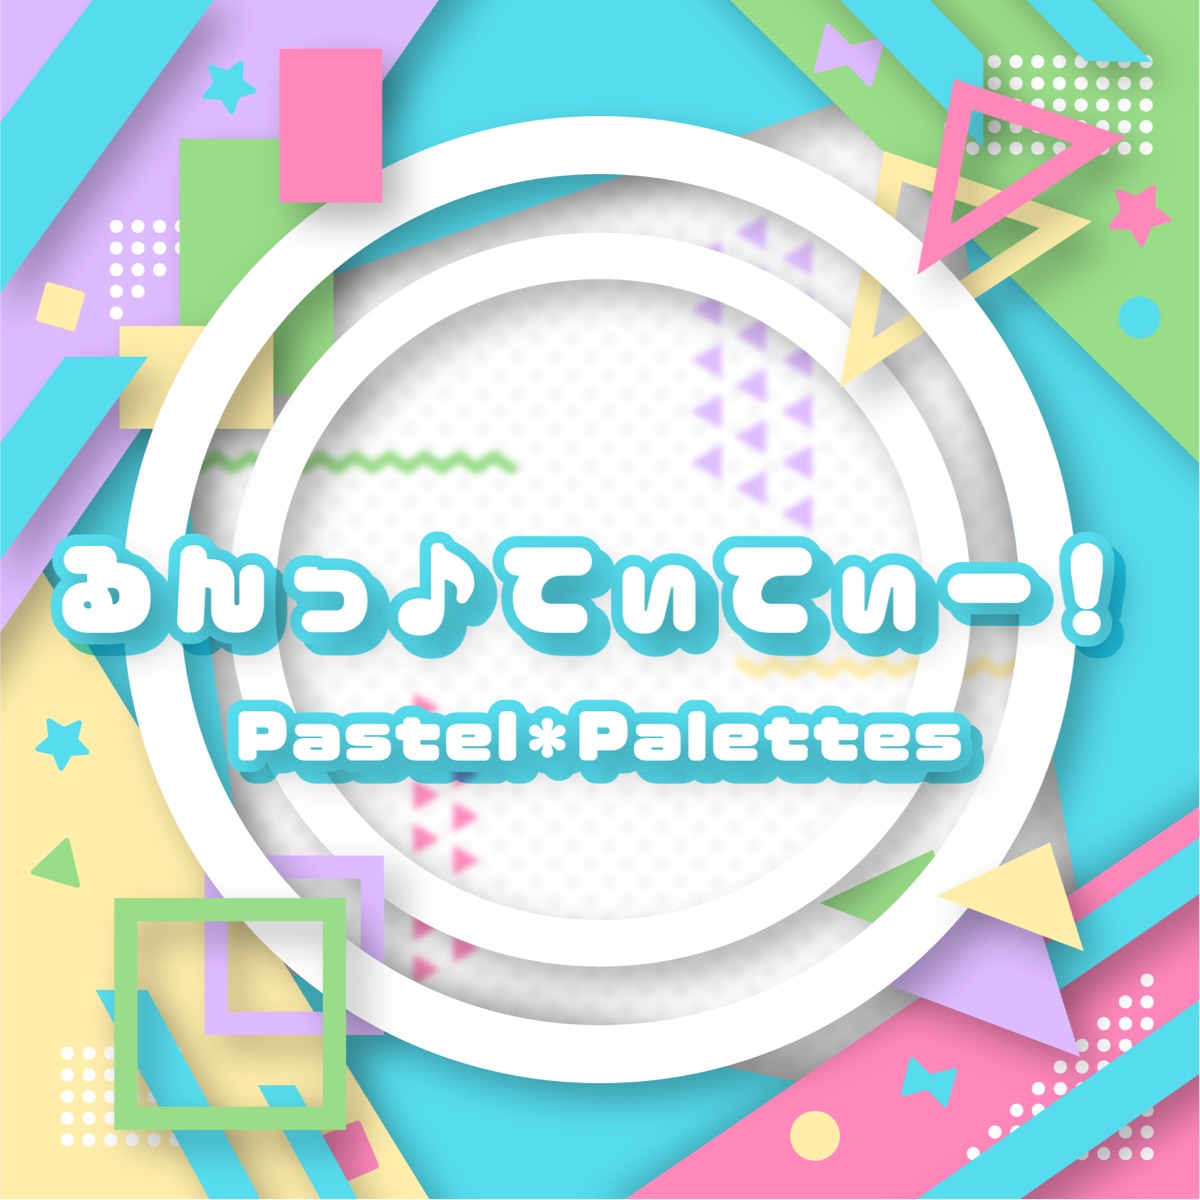 Pastel à la mode - Album by Pastel*Palettes - Apple Music